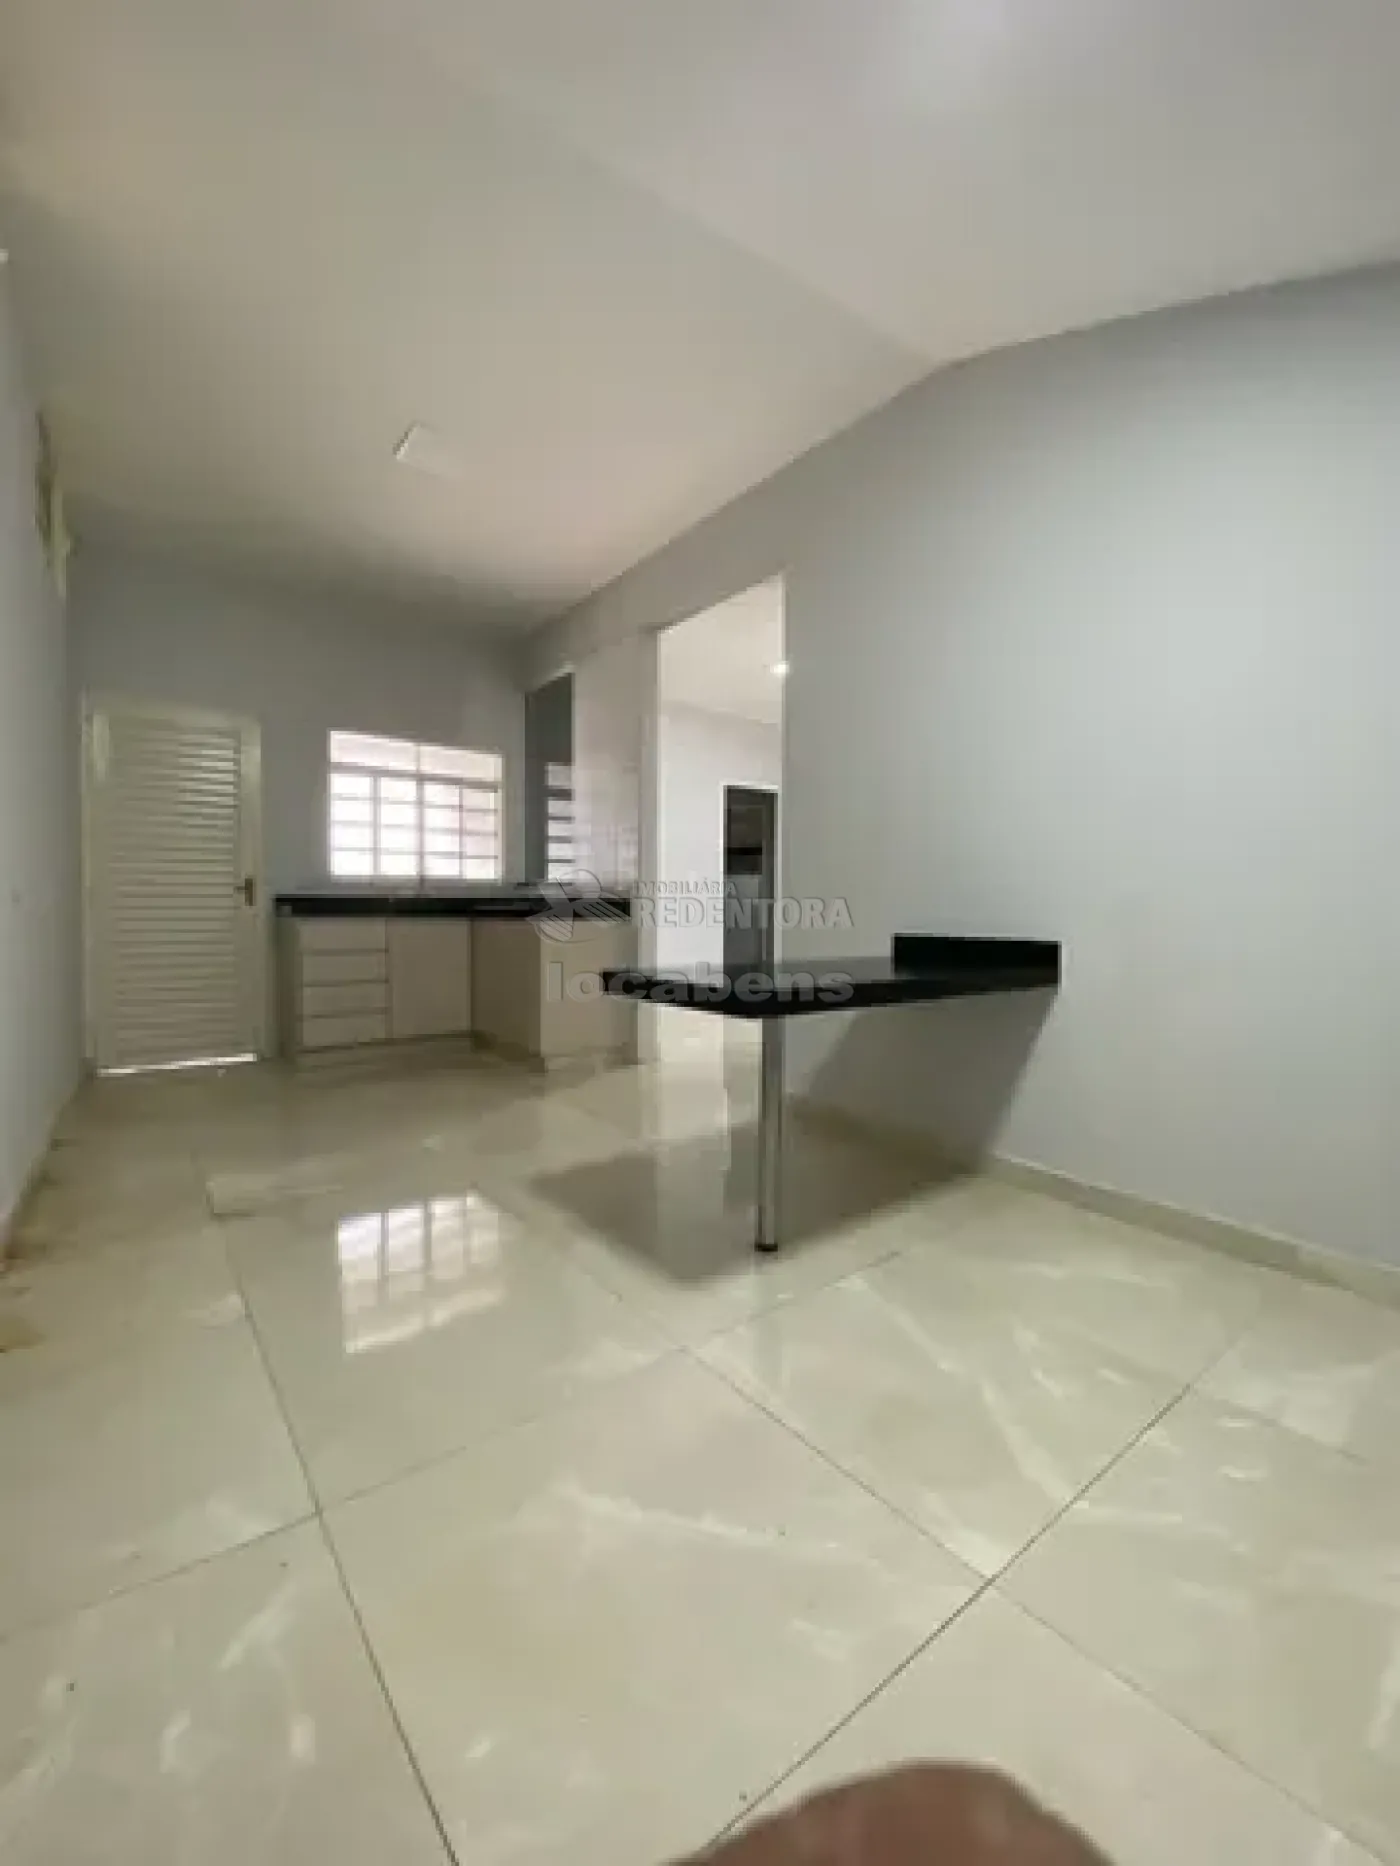 Comprar Casa / Condomínio em Bady Bassitt apenas R$ 260.000,00 - Foto 6